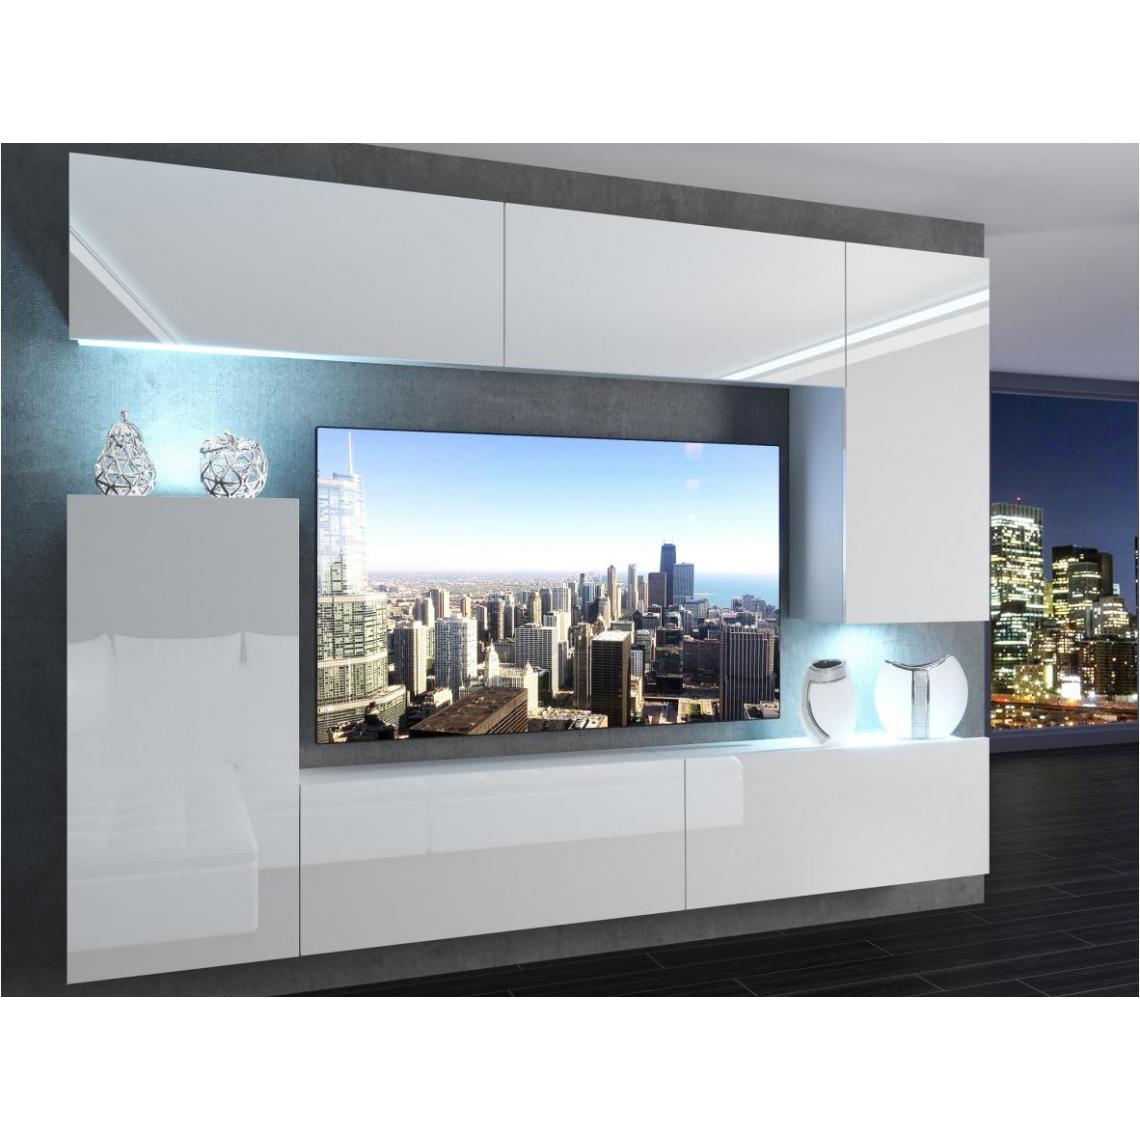 Hucoco - SLIDE - Ensemble meubles TV + LED - Unité murale moderne - Largeur 250 cm - Mur TV à suspendre - Finition gloss - Blanc - Meubles TV, Hi-Fi